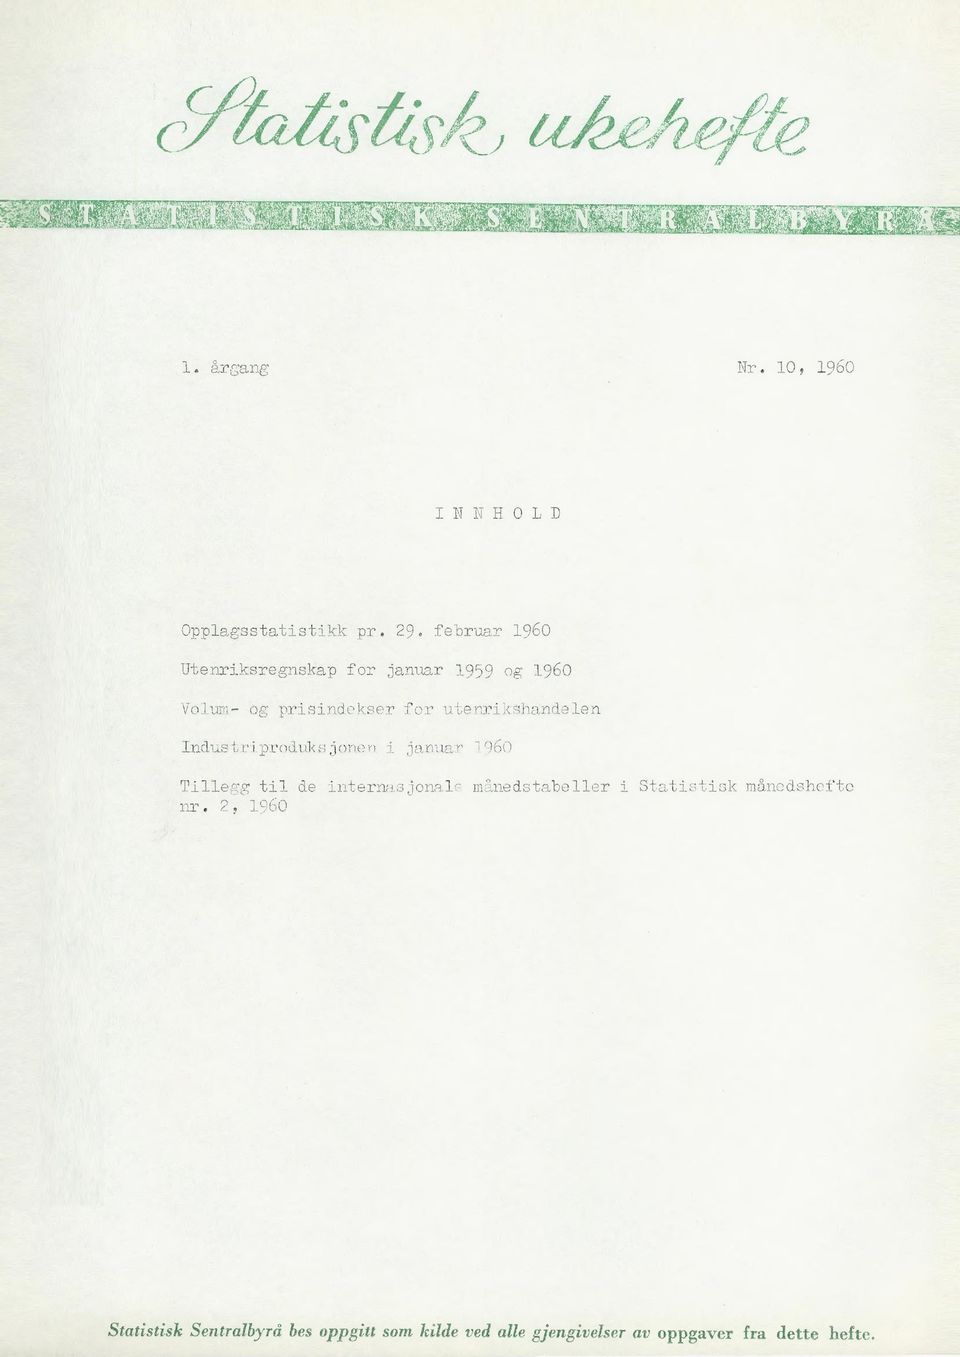 utenrikshandelen Industriproduksjonen i januar 1960 Tillegg til de internasjonale